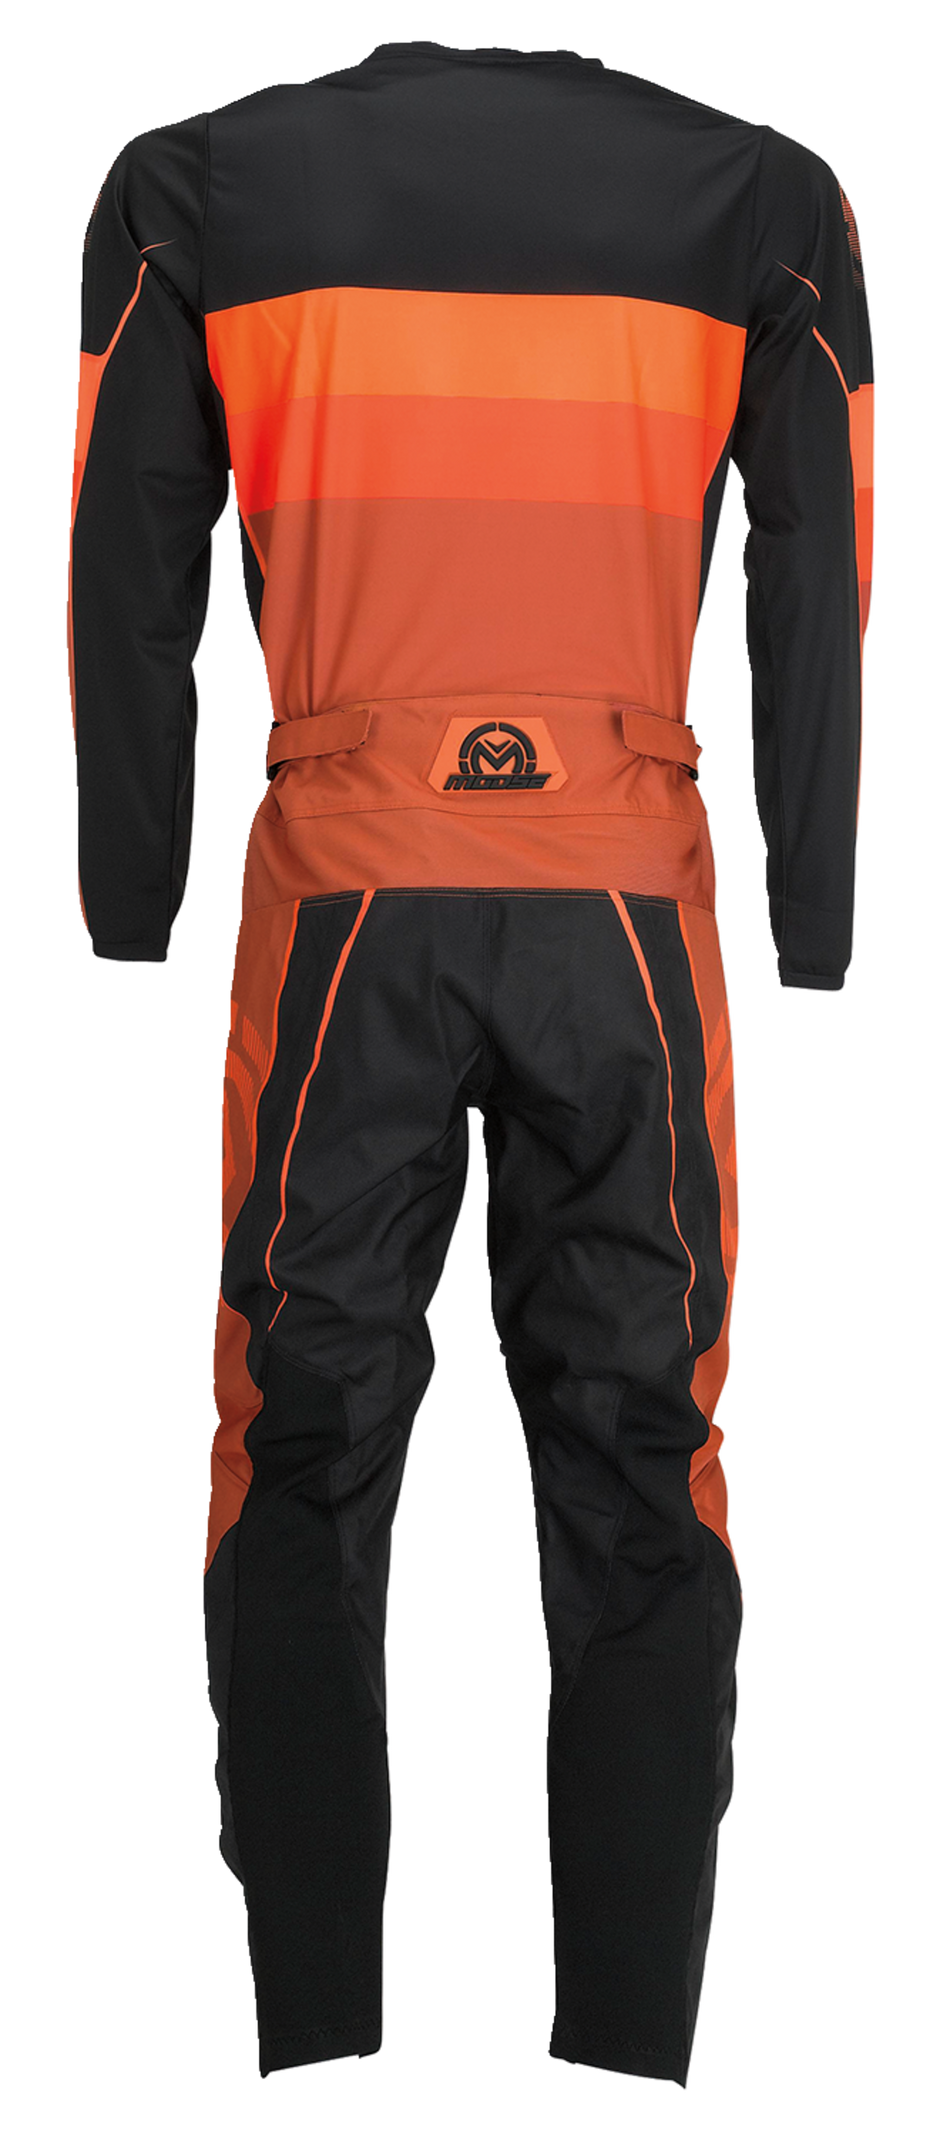 Camiseta MOOSE RACING Qualifier® - Naranja/Gris - XL 2910-7199 